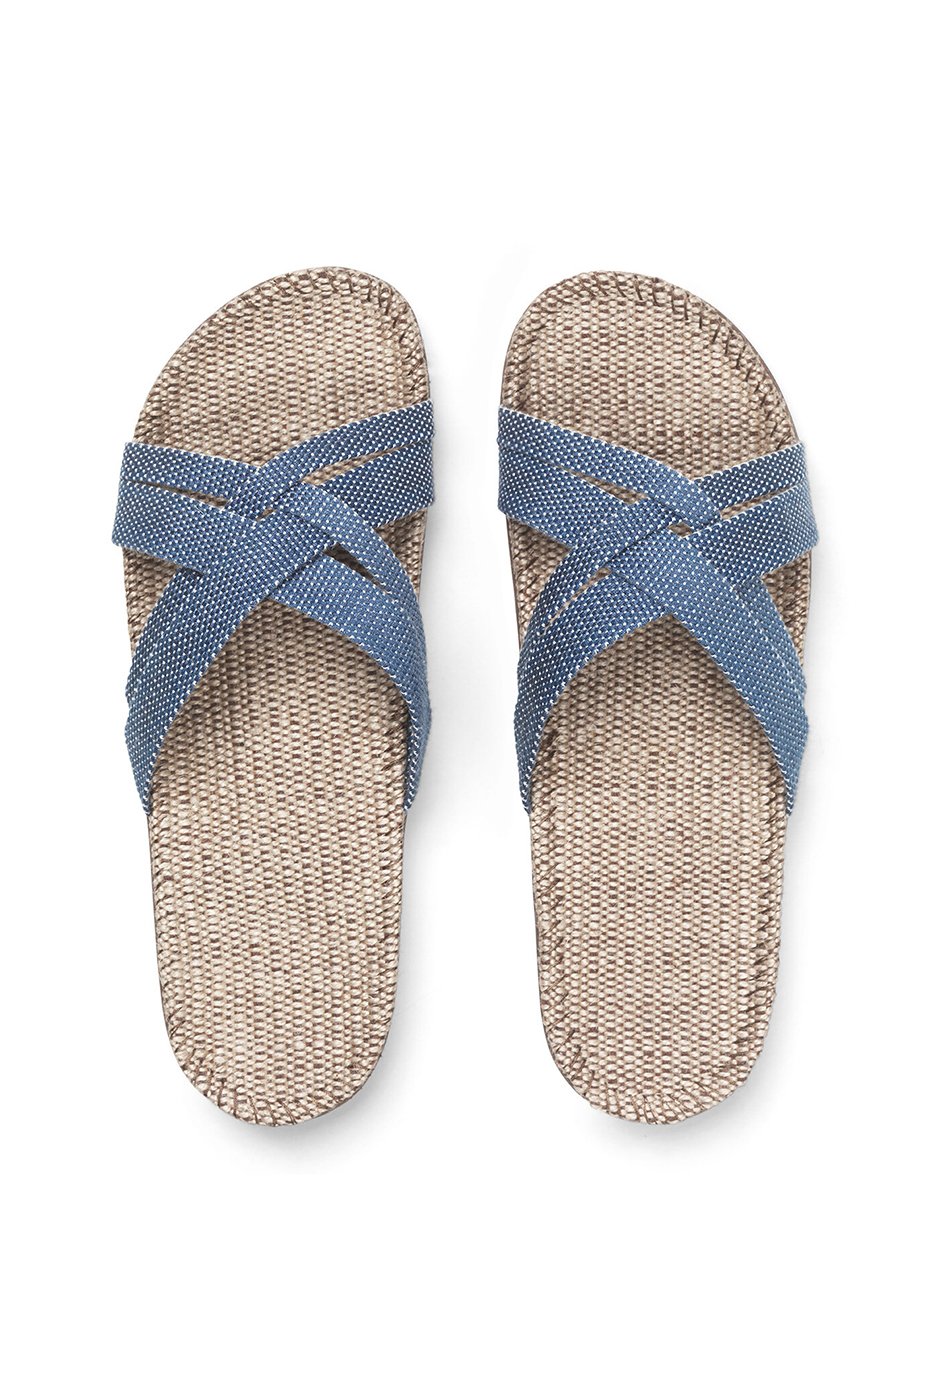 Shangies Blue Dot Sandals